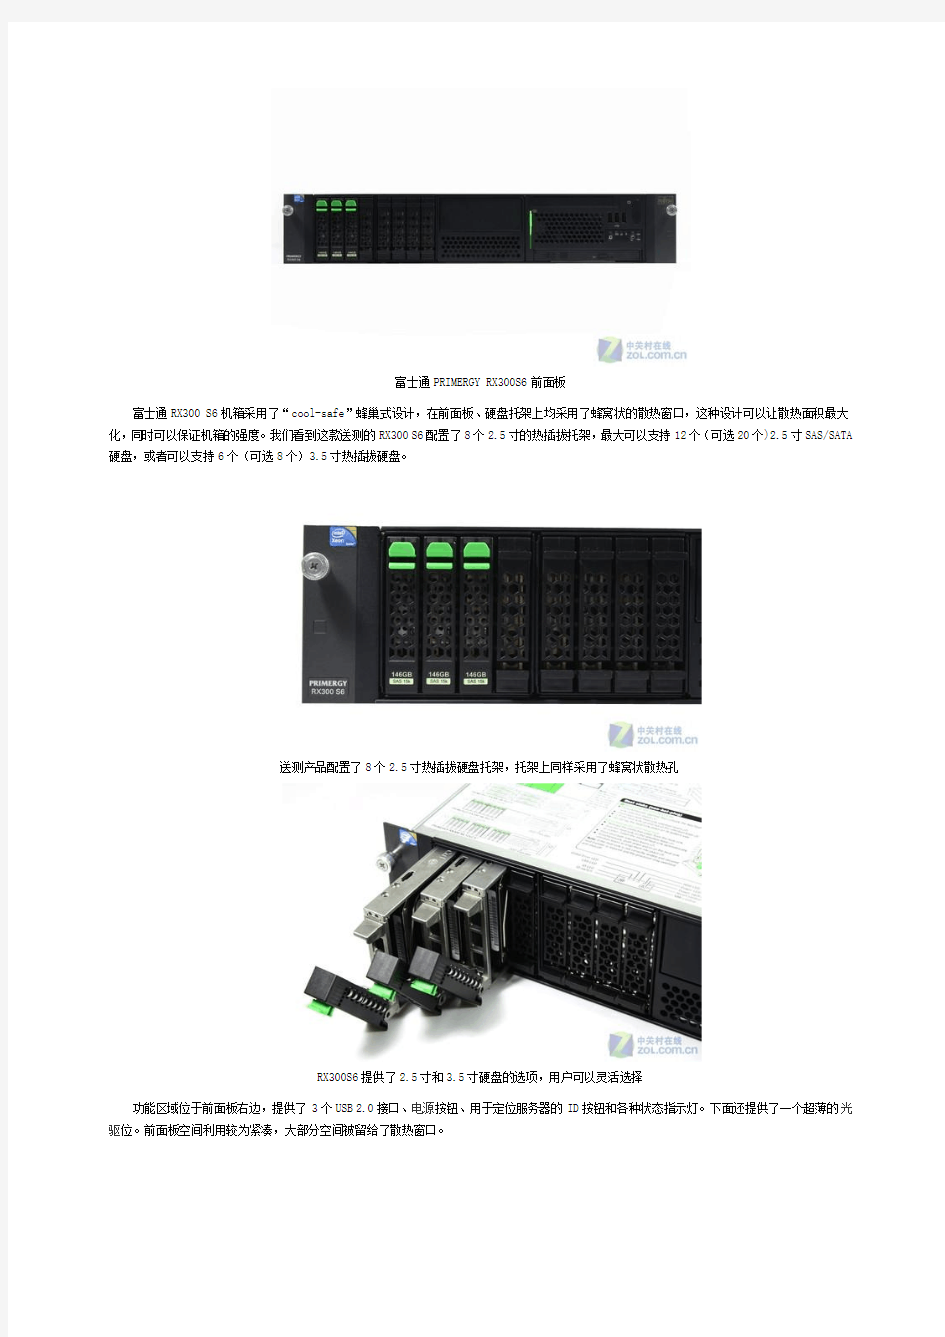 富士通X86服务器火热评测